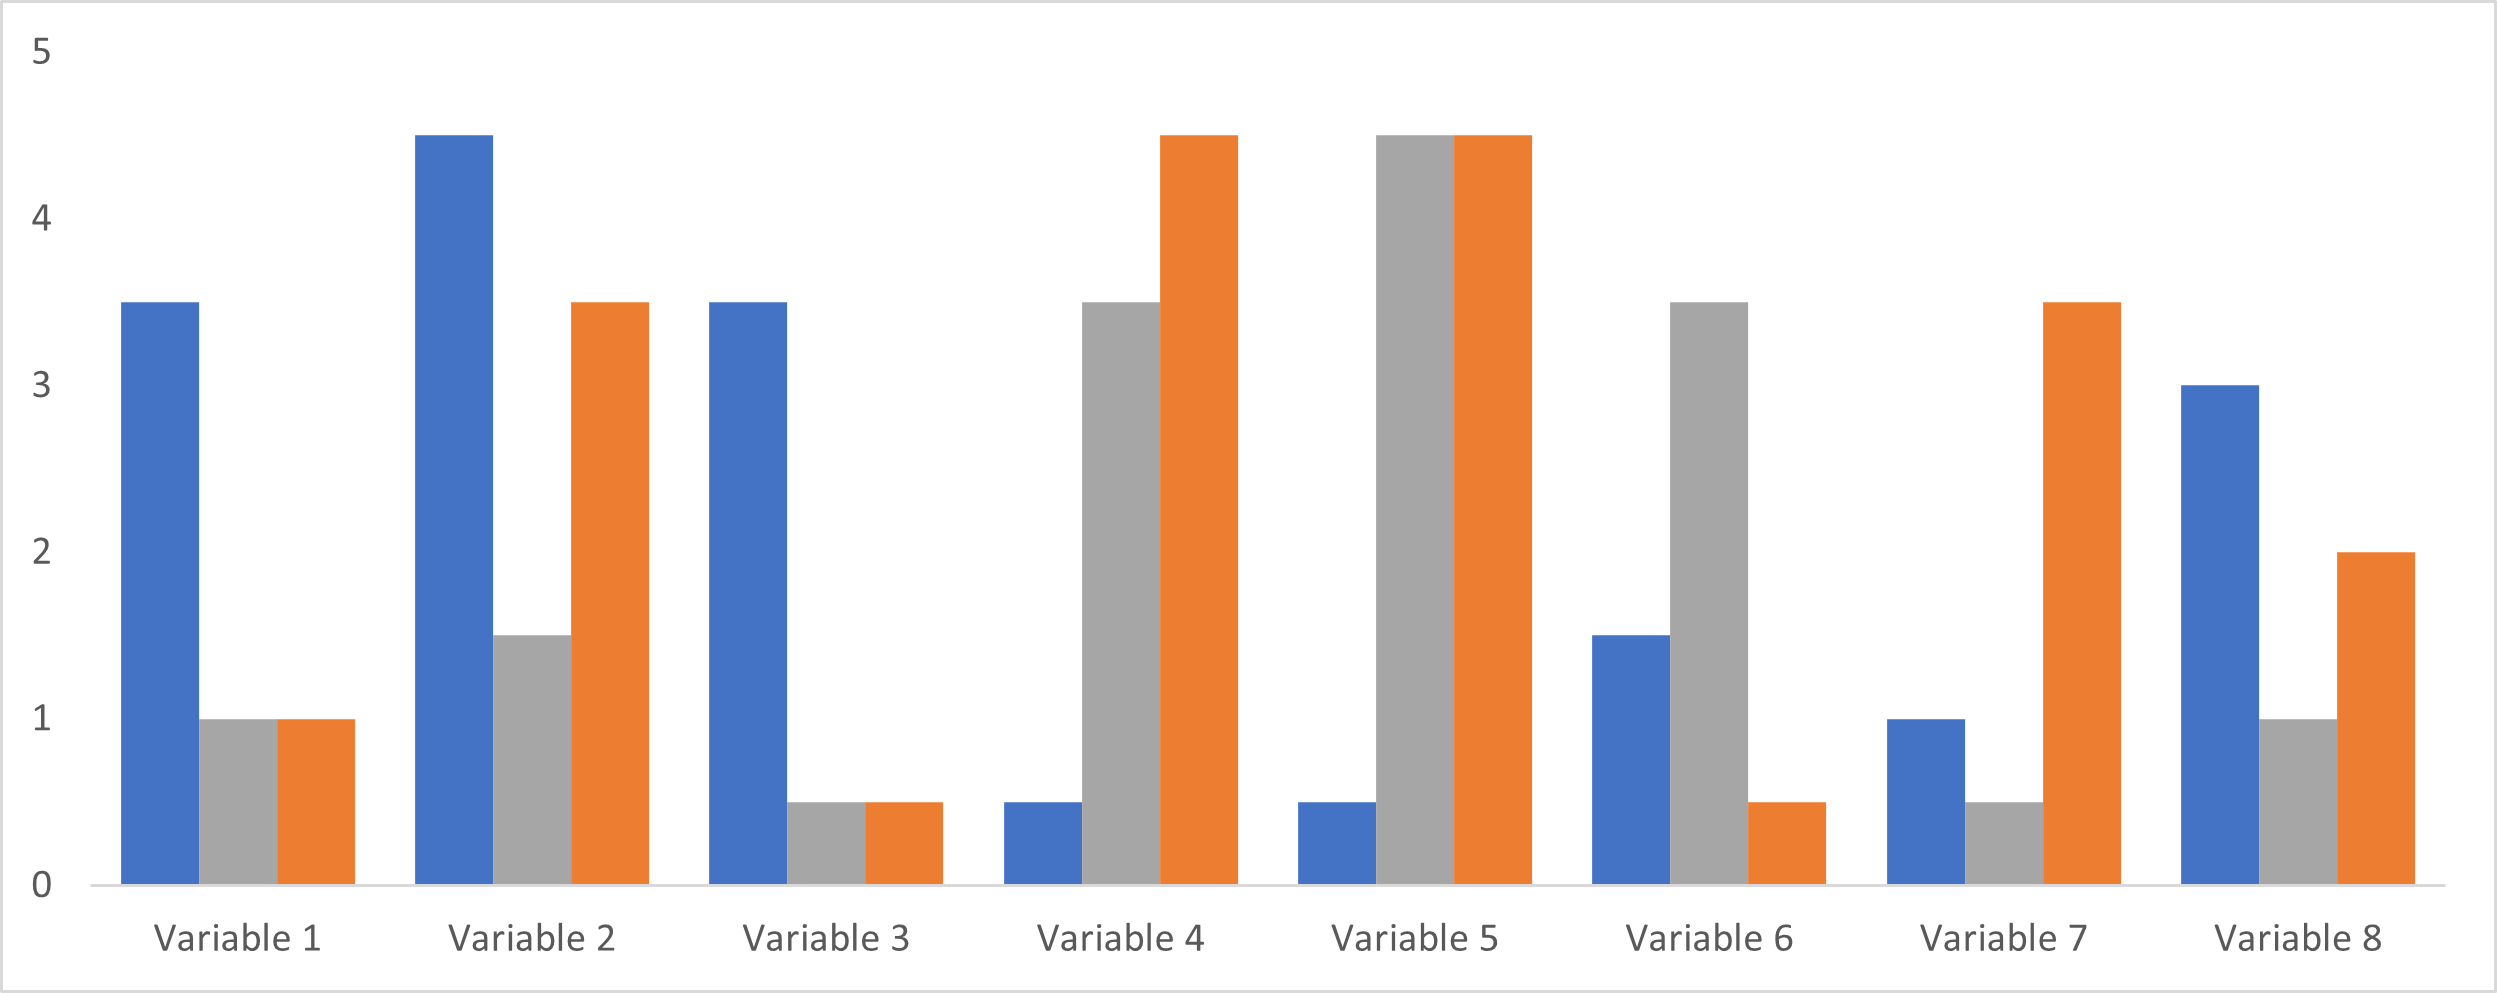 clustered bar 8 variables